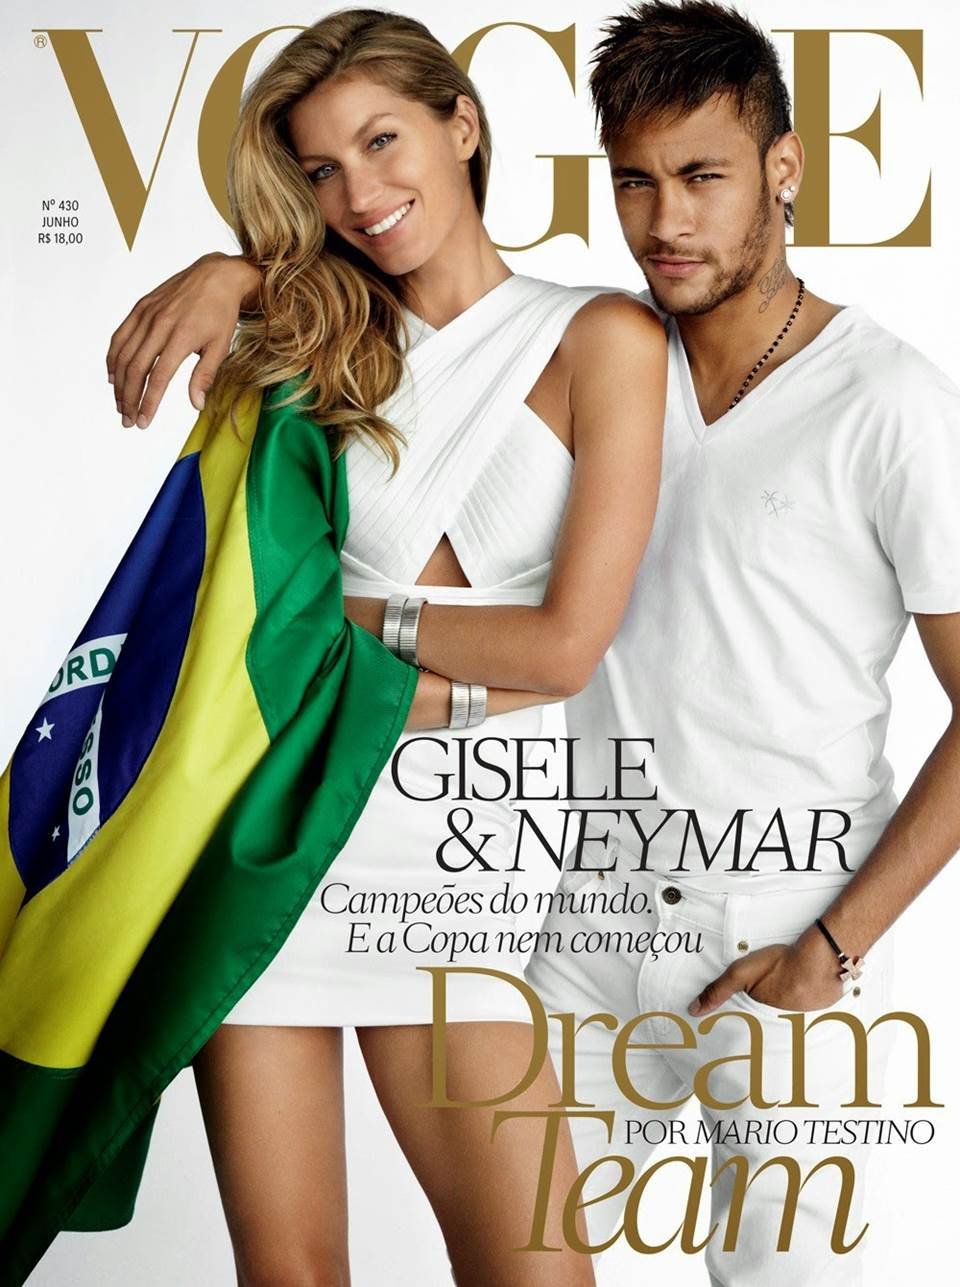 Reprodução/Vogue Brasil